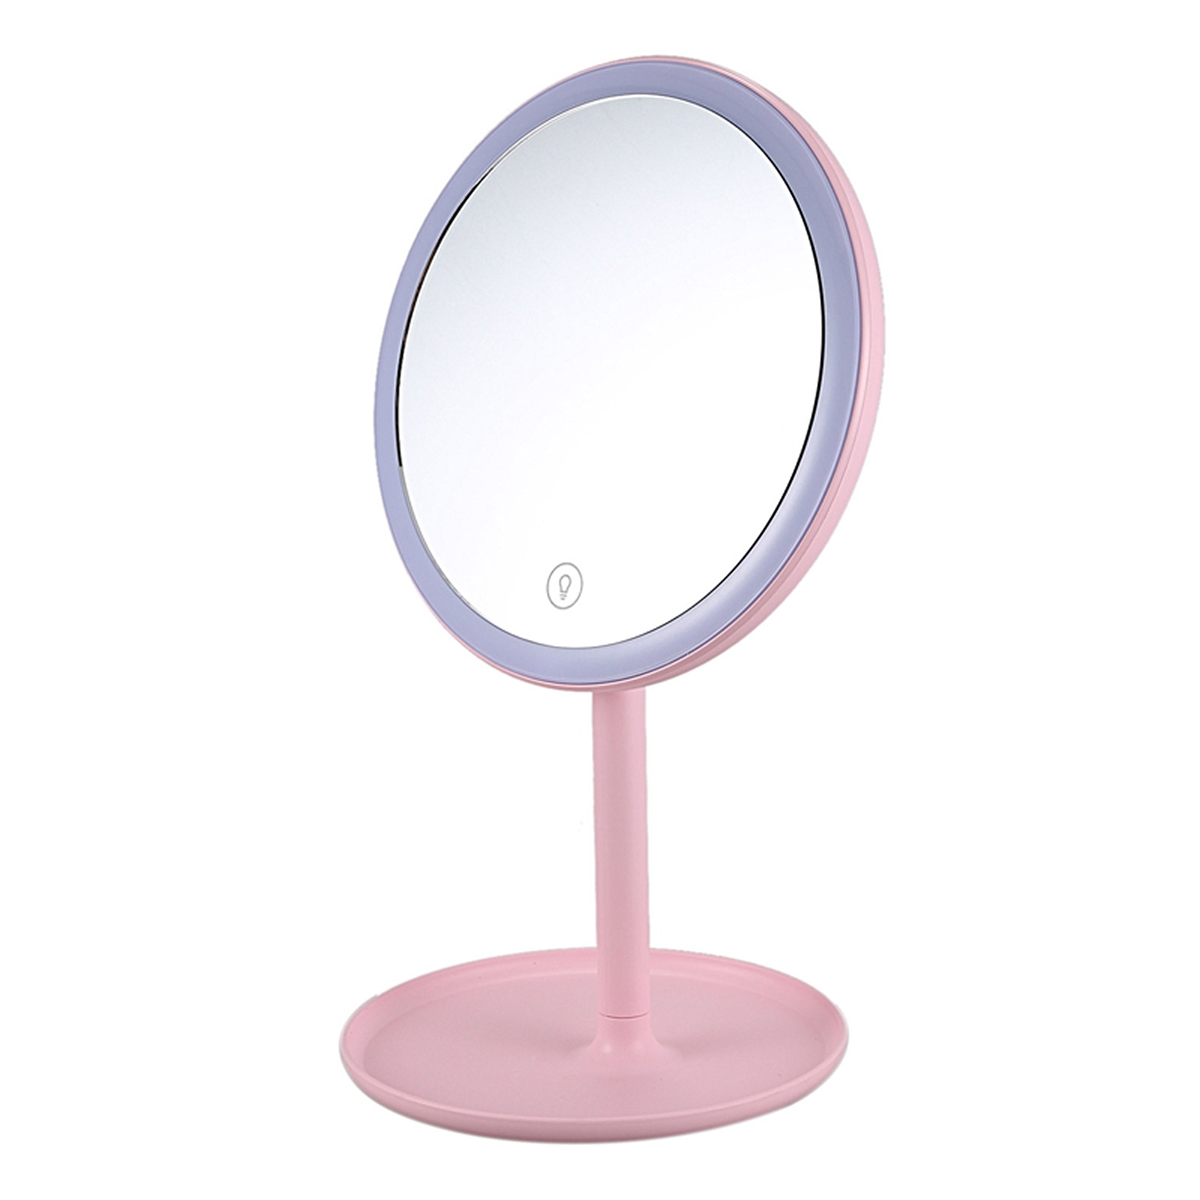 Зеркало косметическое для макияжа с LED подсветкой, цвет розовый.